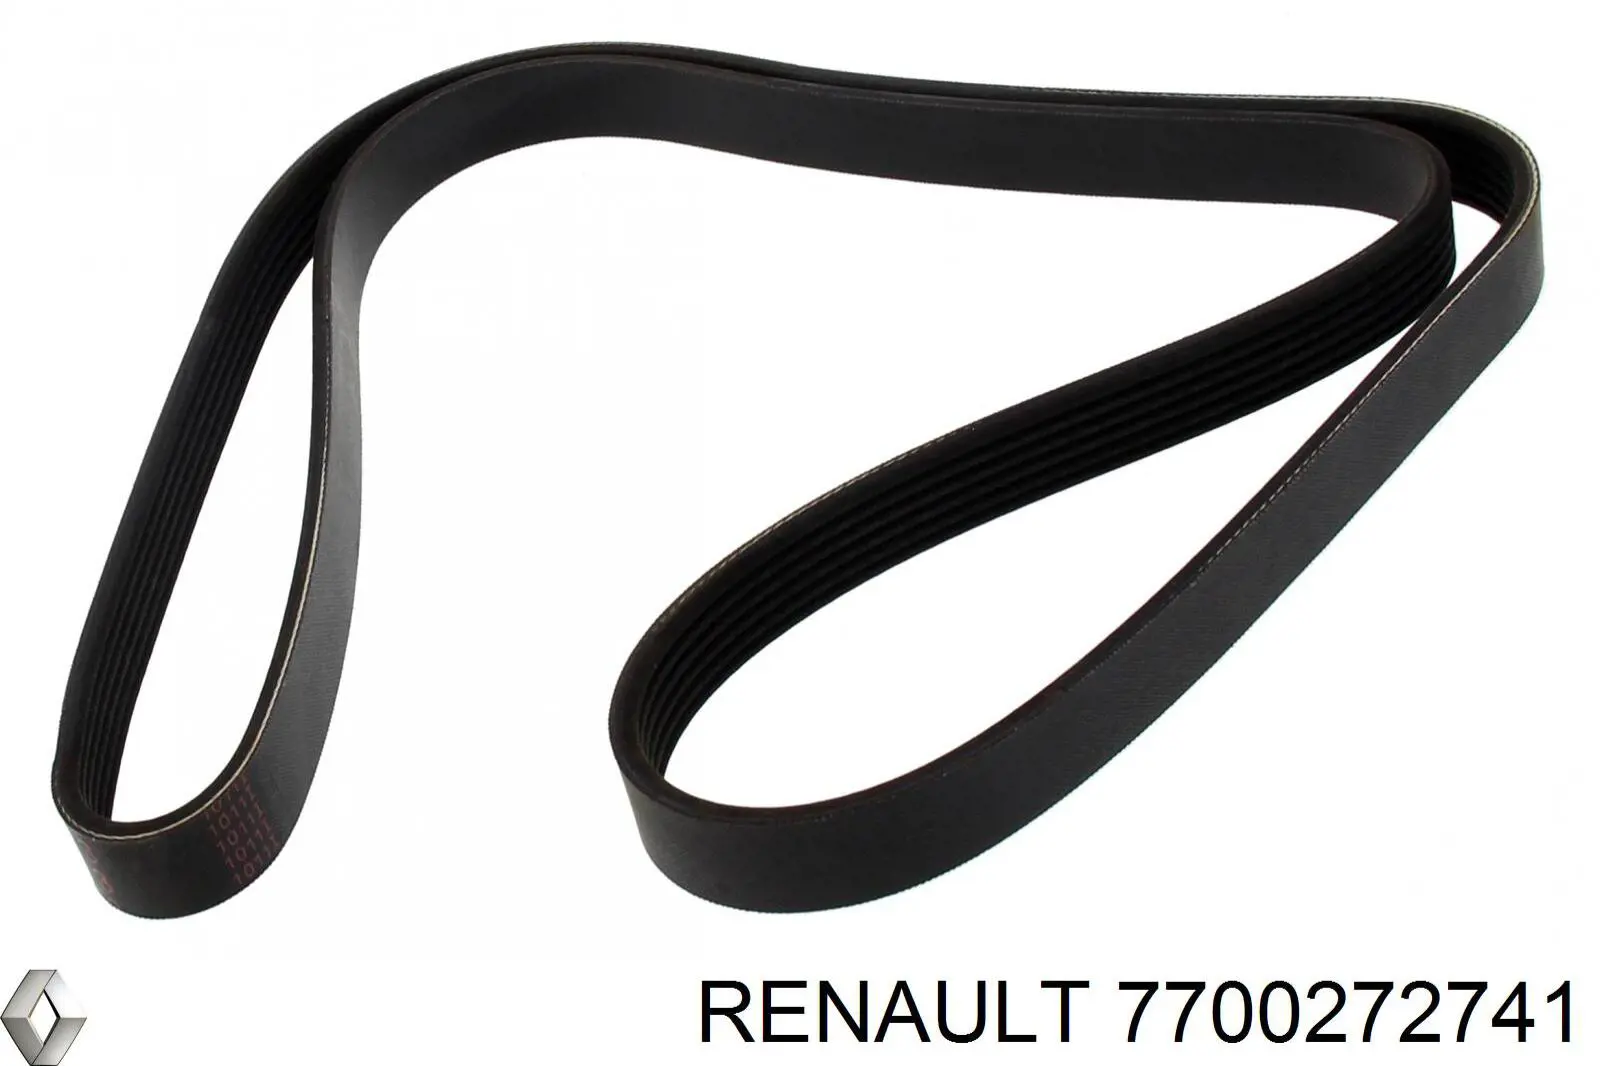 7700272741 Renault (RVI) correa trapezoidal